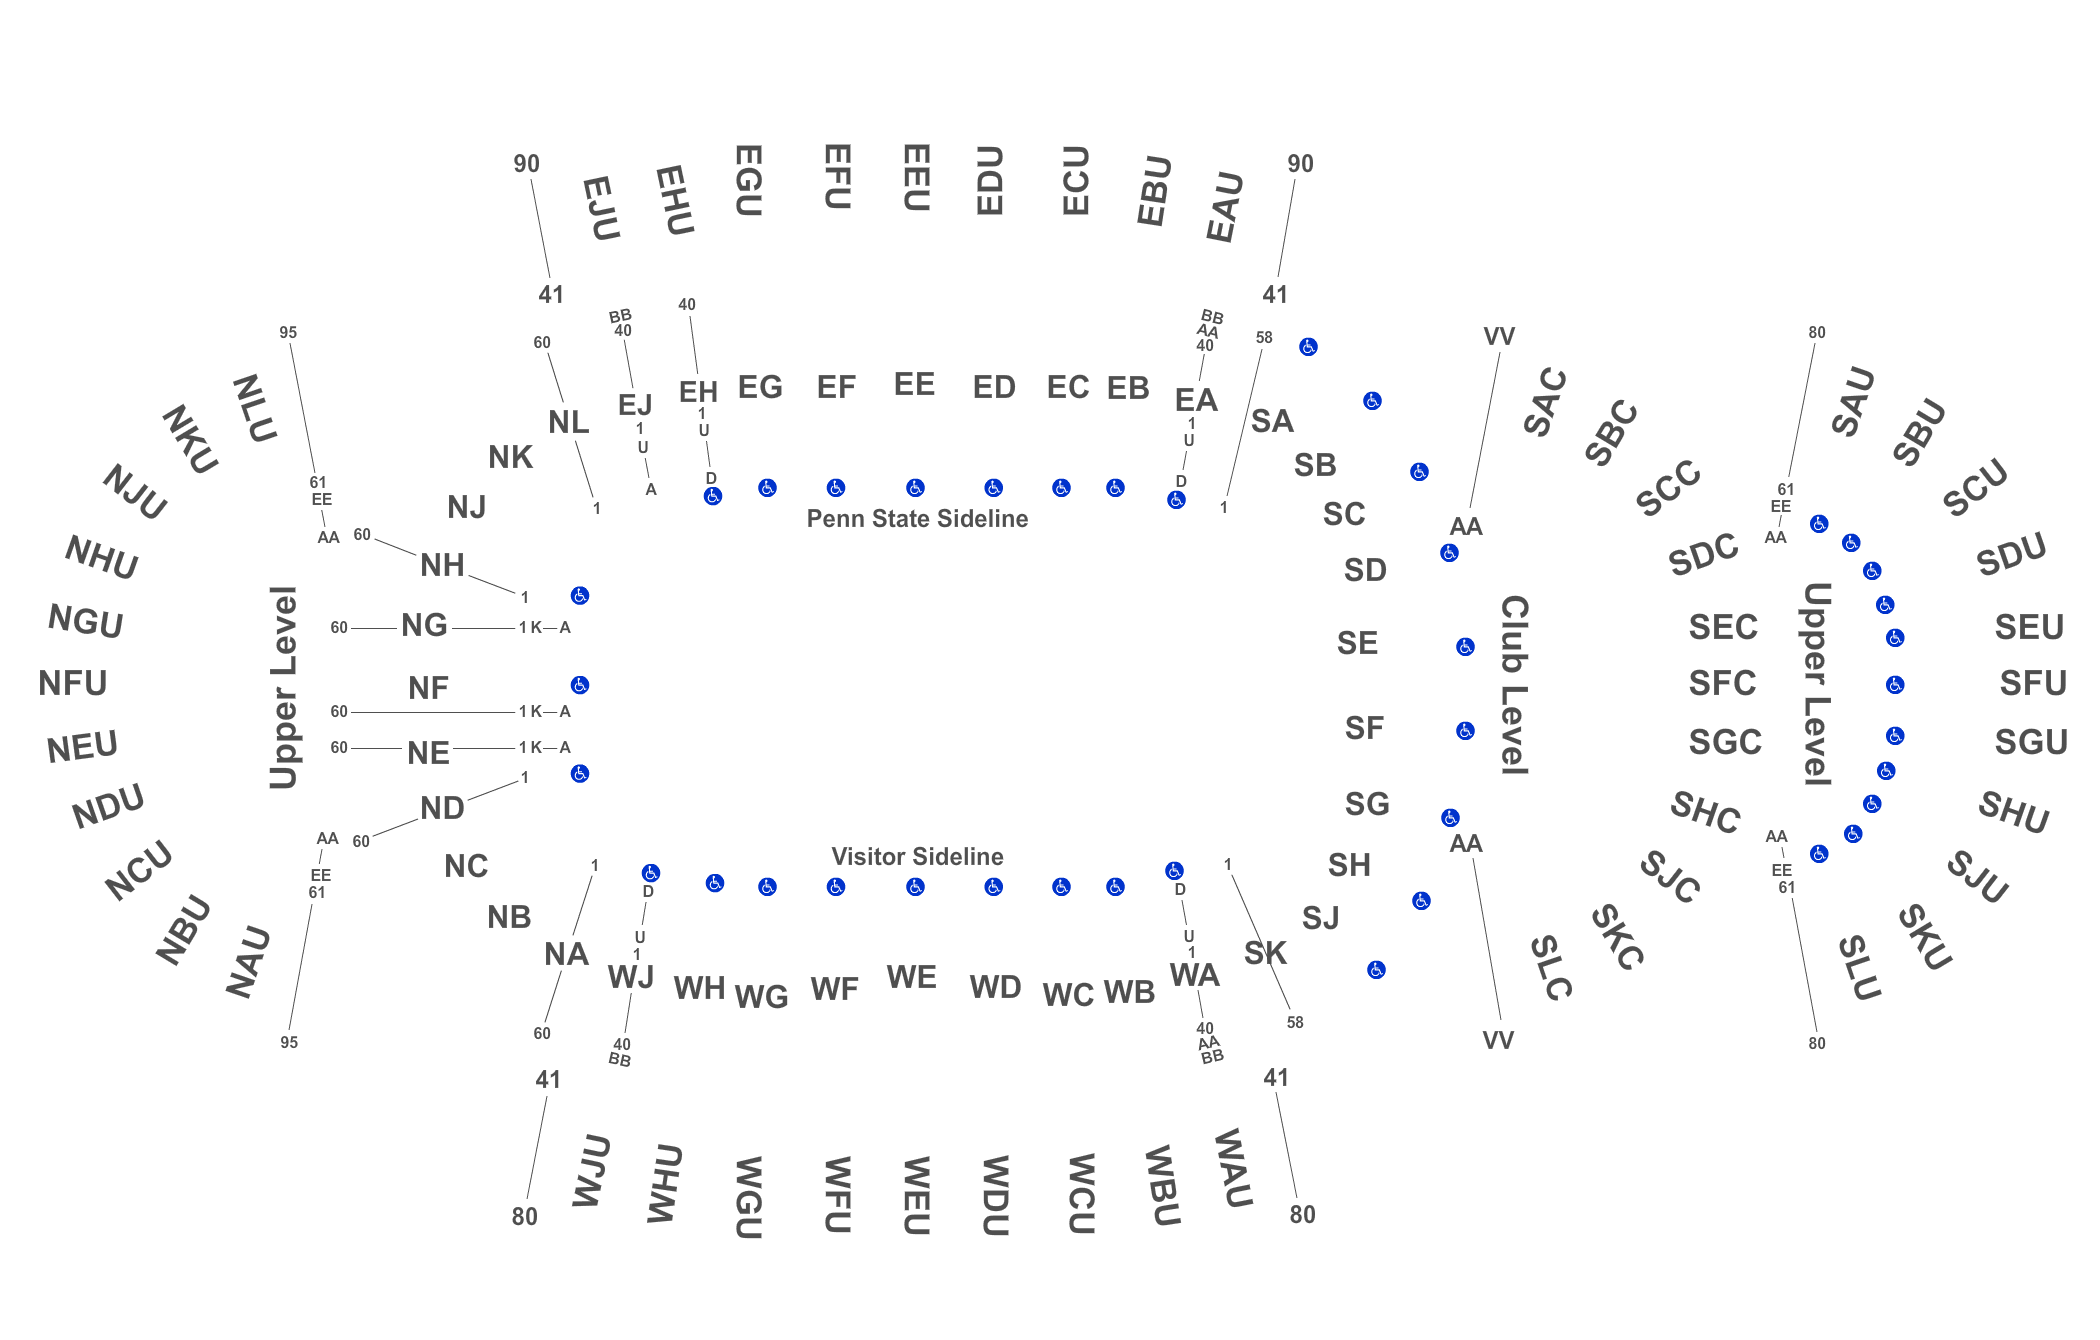 Beaver Stadium Interactive Seating Chart